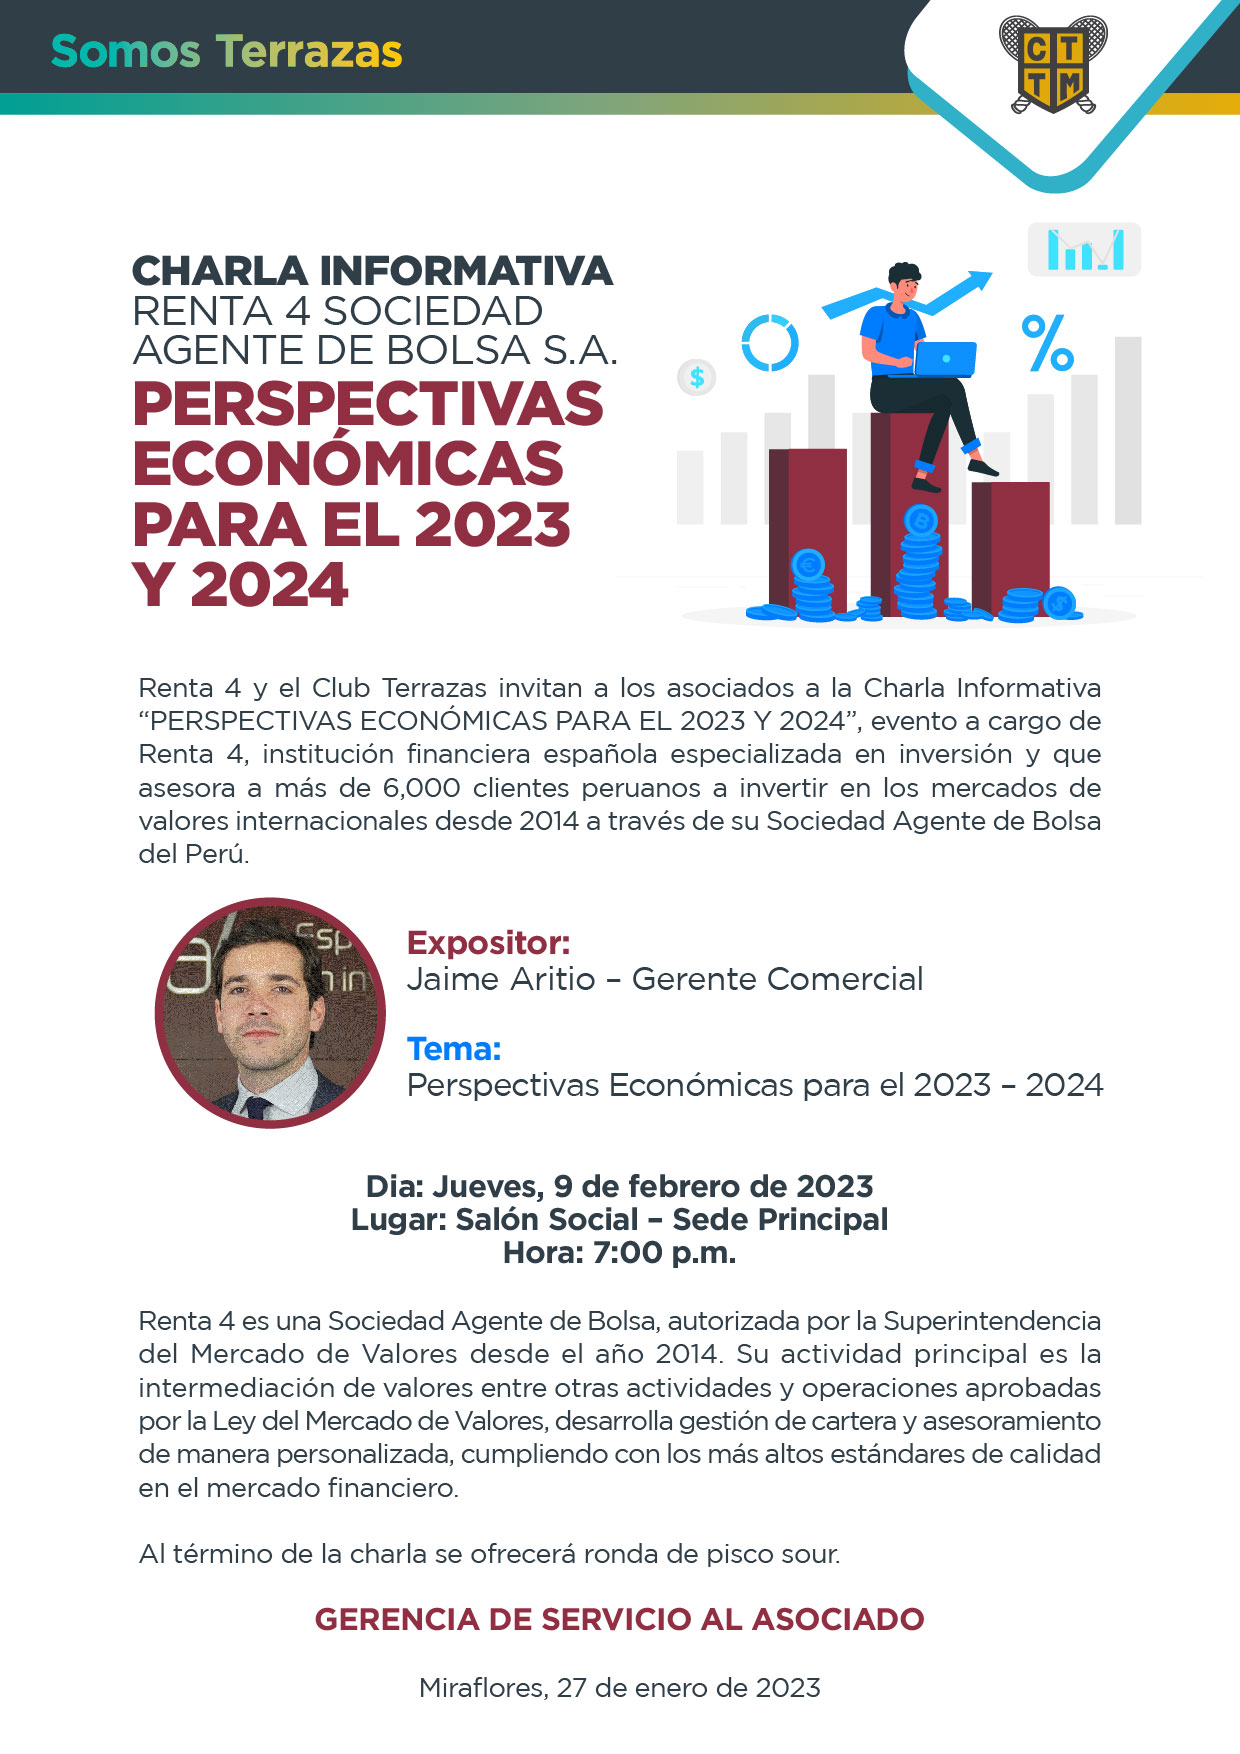  CHARLA INFORMATIVA: PERSPECTIVAS ECONÓMICAS PARA EL 2023 Y 2024 - RENTA 4 SOCIEDAD AGENTE DE BOLSA S.A. 